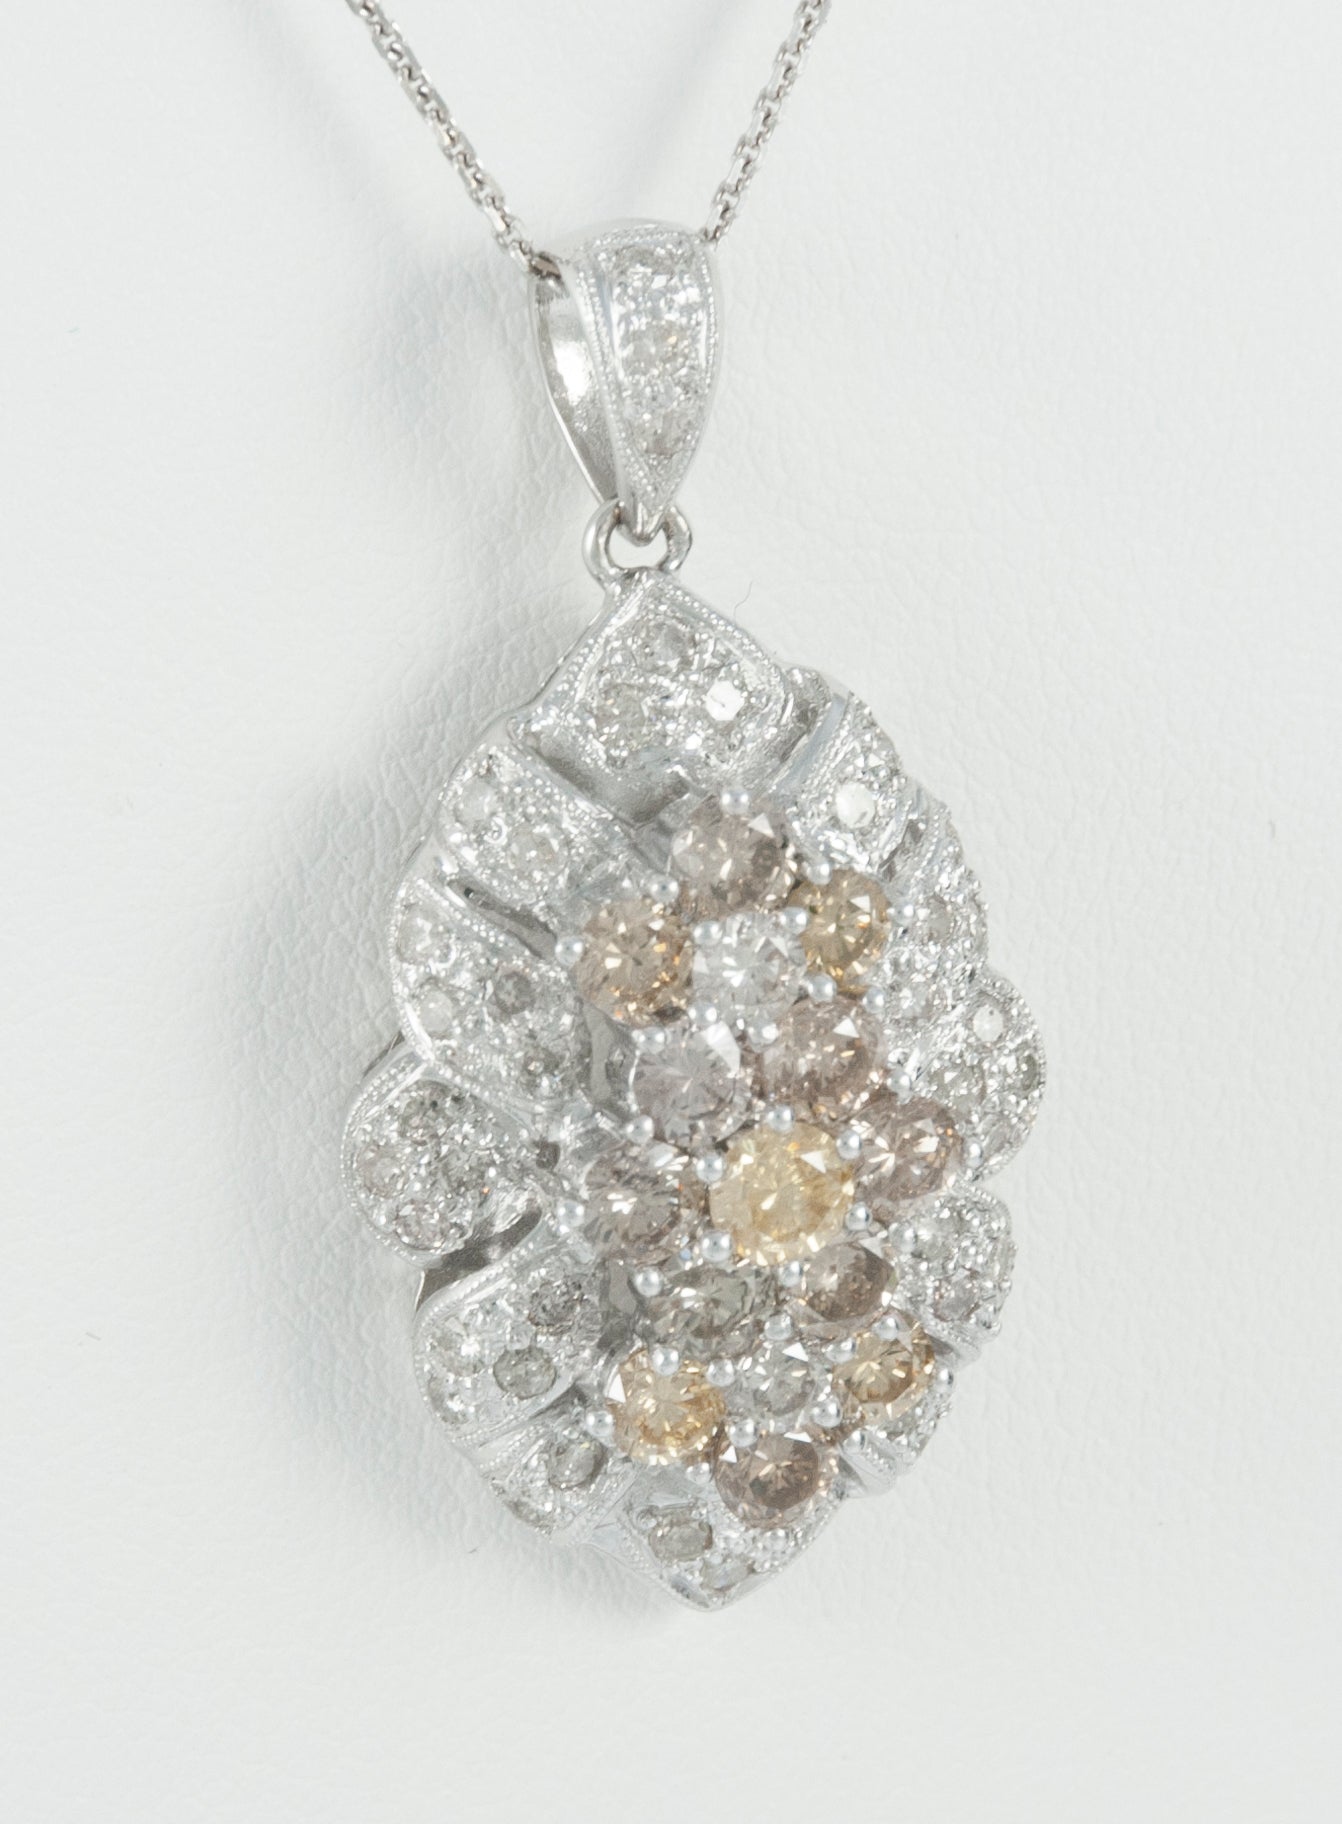 Cadena y colgante en oro blanco 18k y brillantes 3.5 ct House of R&D - Mayka Jewels